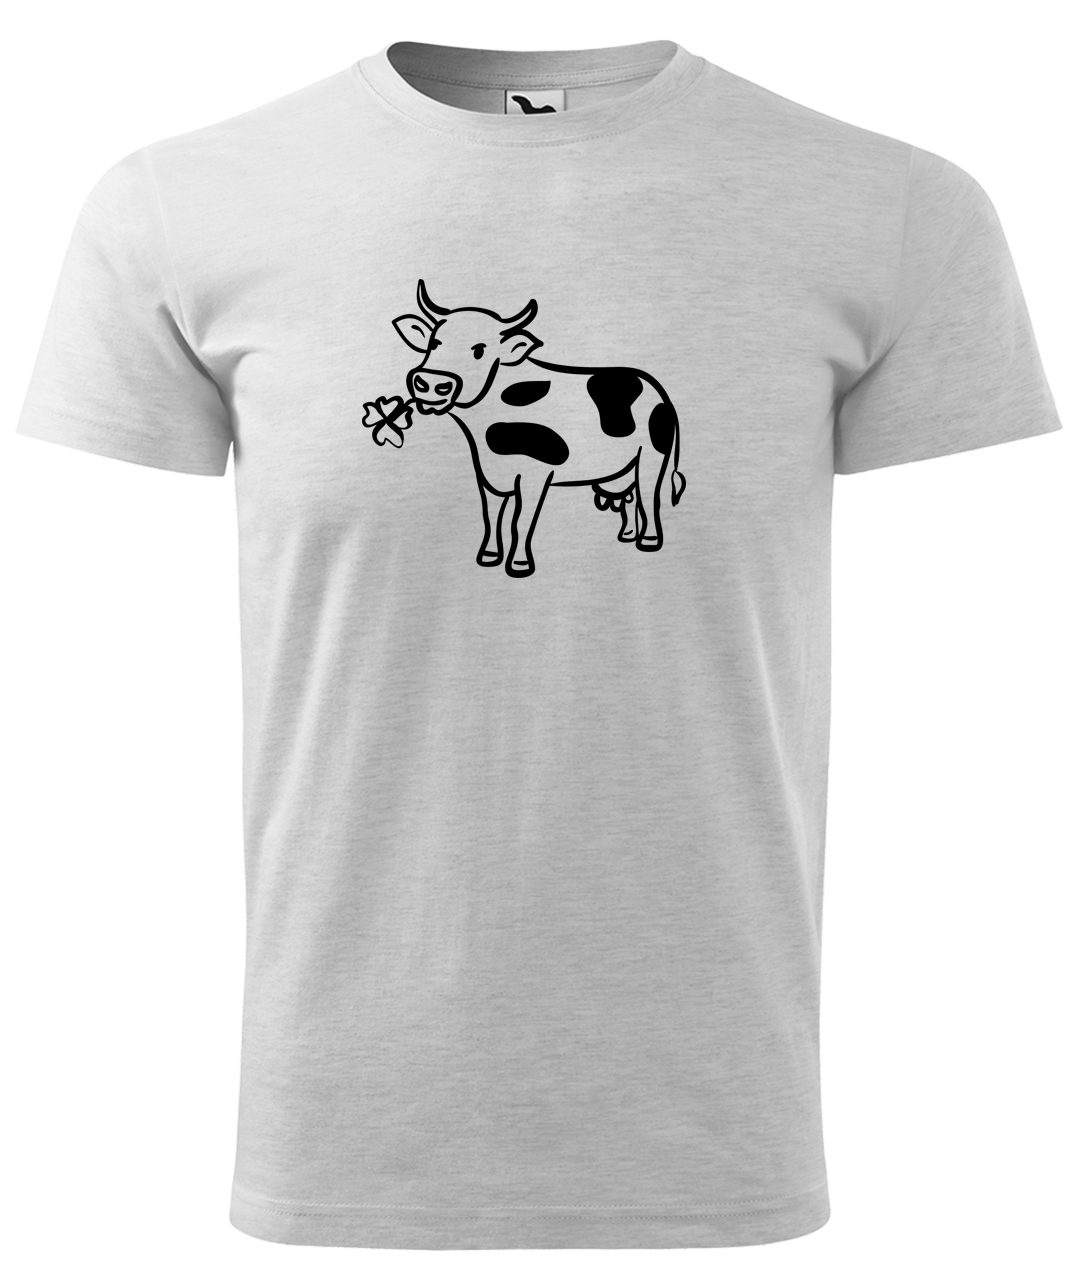 Dětské tričko s krávou - Kravička a jetel Velikost: 4 roky / 110 cm, Barva: Světle šedý melír (03), Délka rukávu: Krátký rukáv